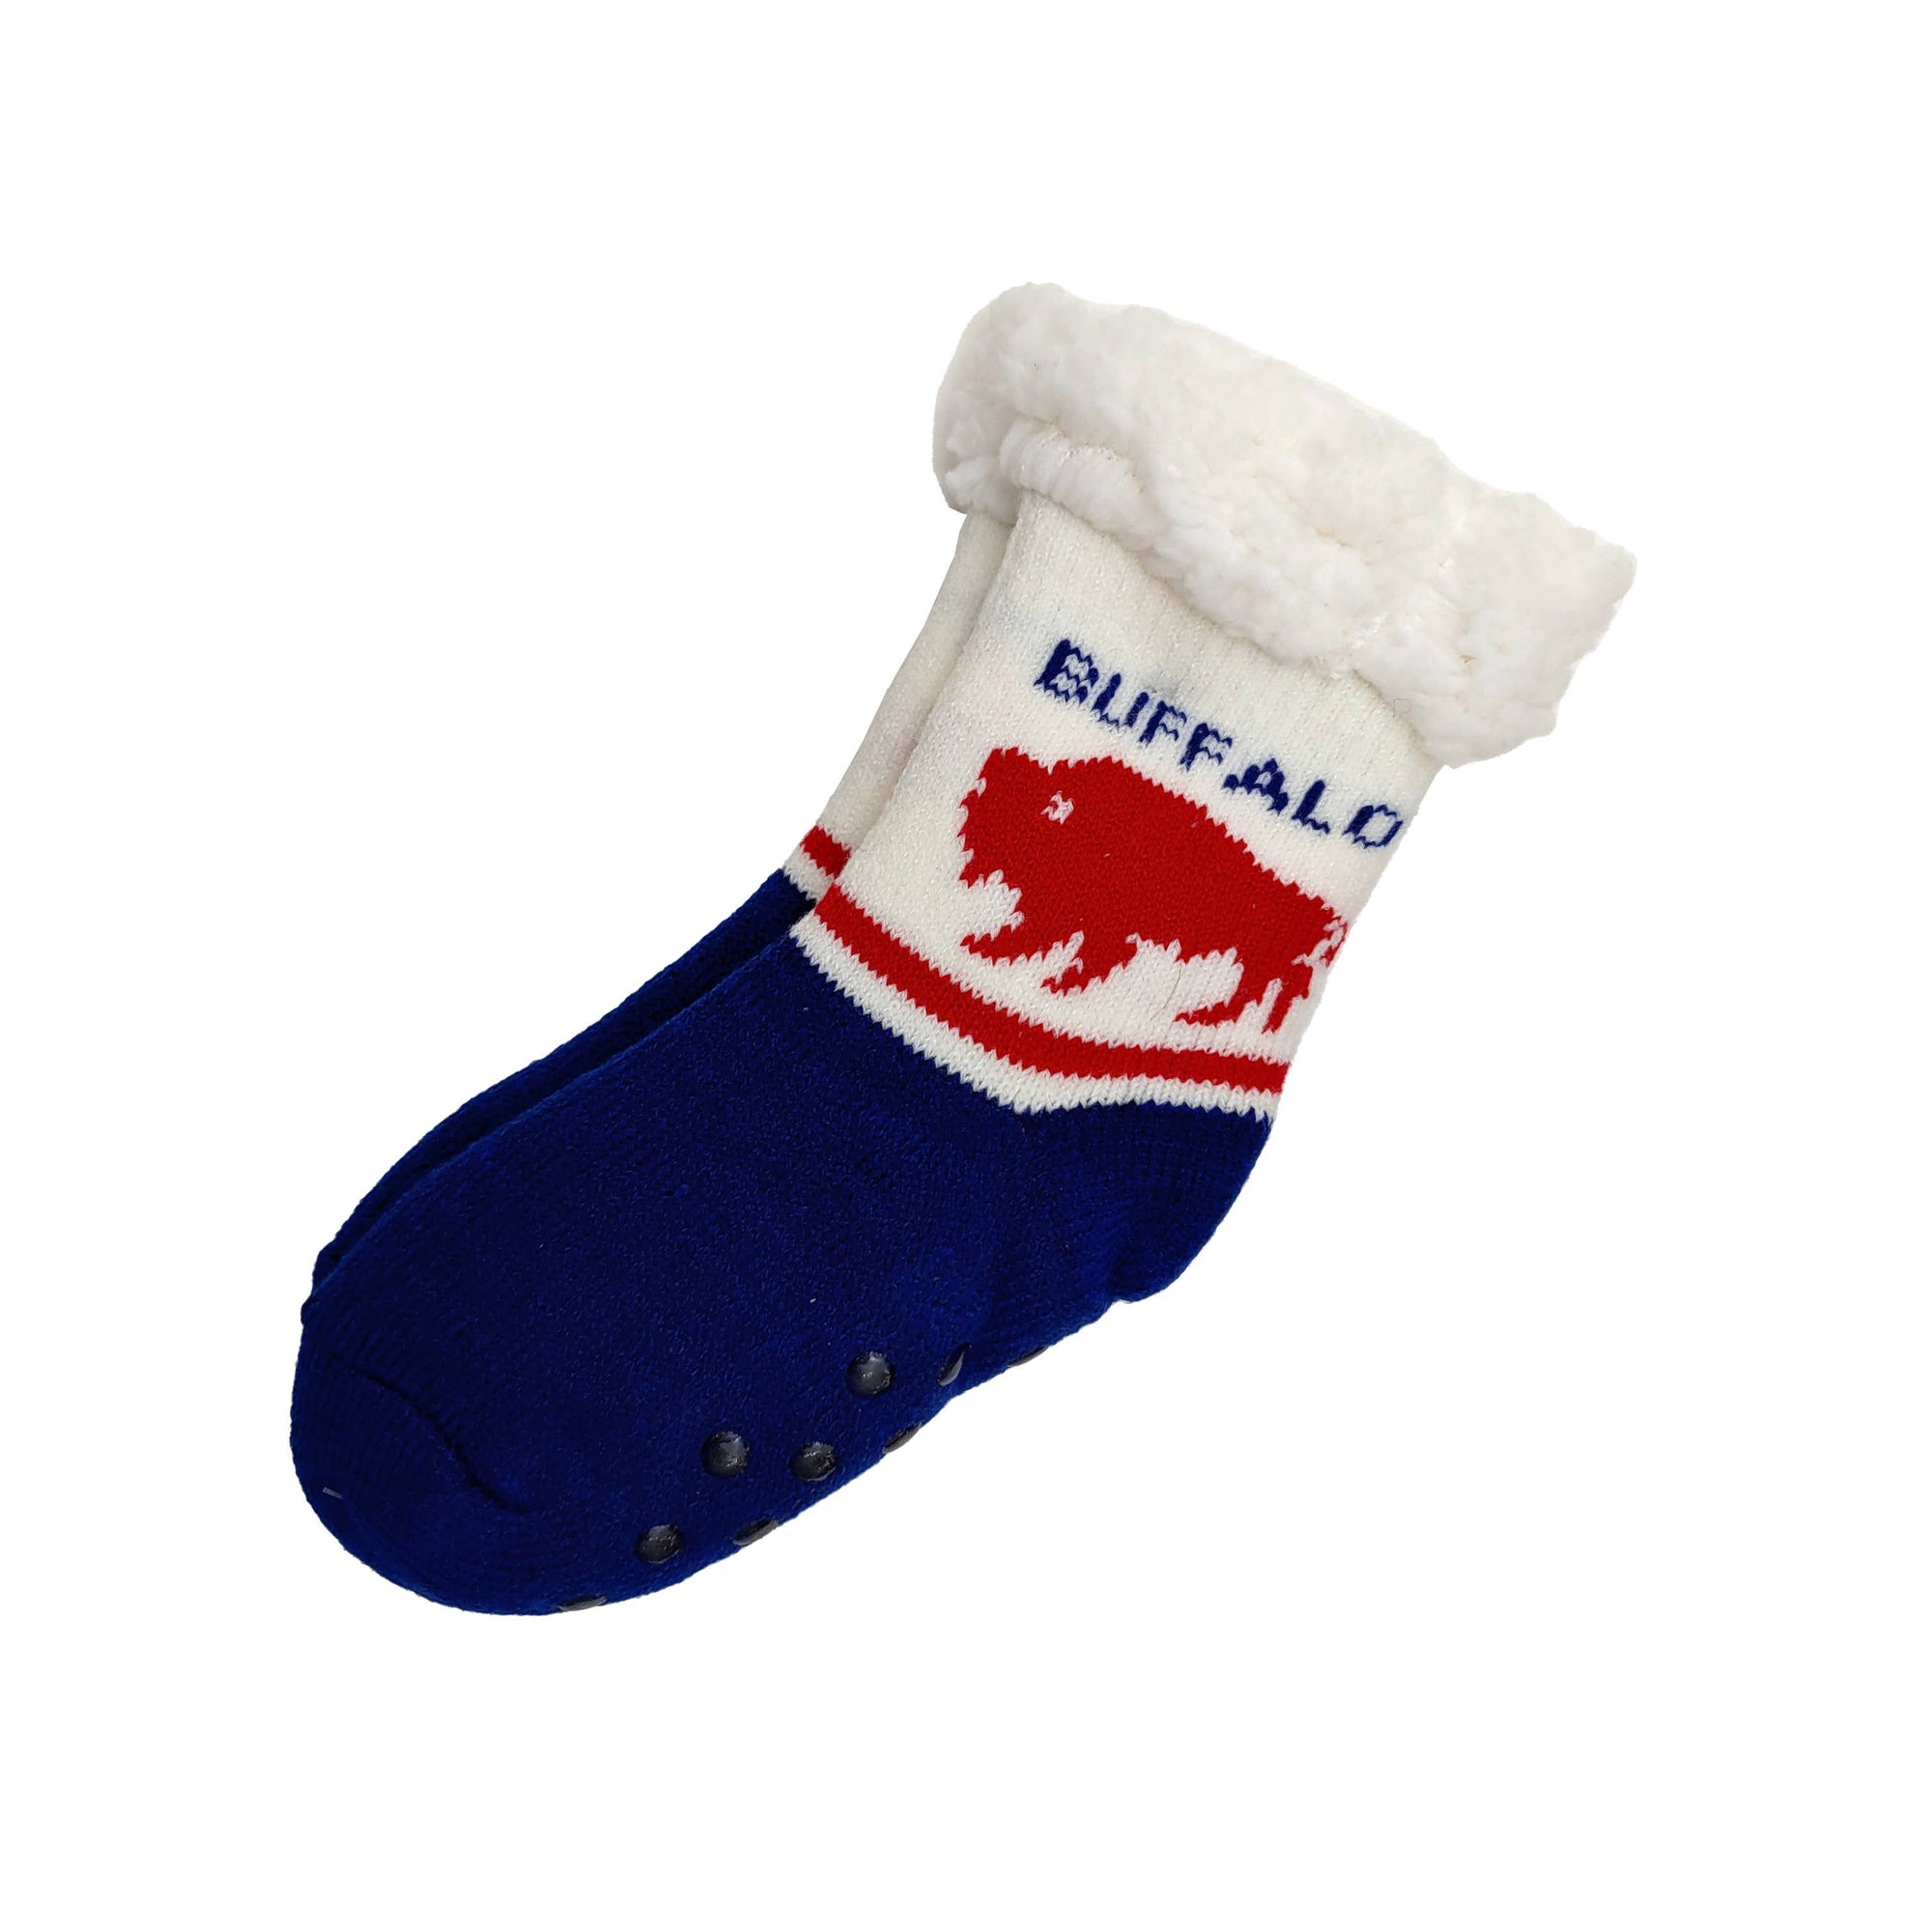 Navy/Red Slipper Socks